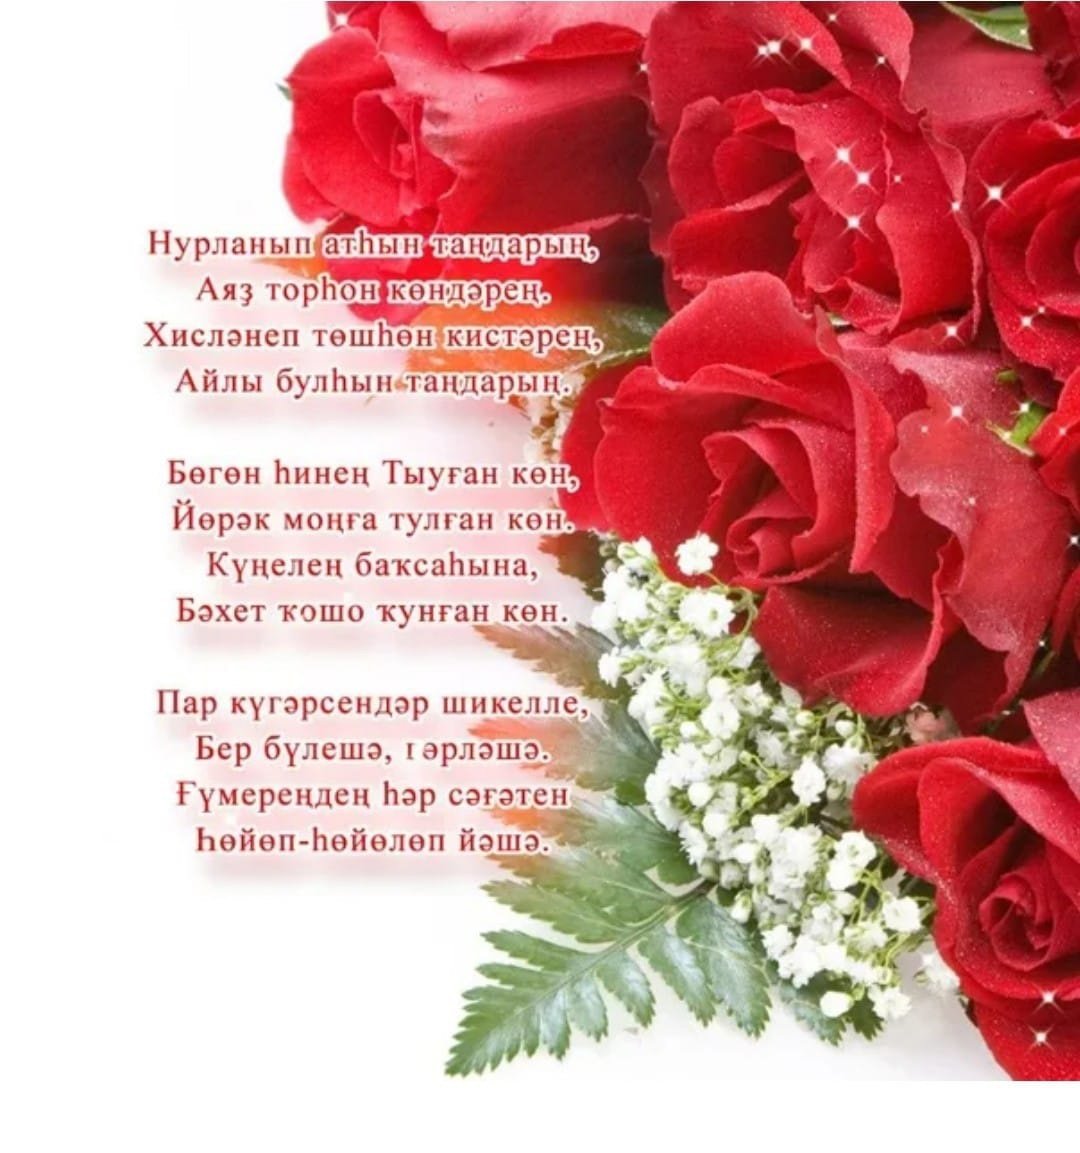 Поздравления башкирские открытки. Поздравление с юбилеем на башкирском языке. Открытки с юбилеем женщине на башкирском языке. Башкирские поздравления с днем рождения женщине. Поздравляю с днём рождения на башкирском языке.